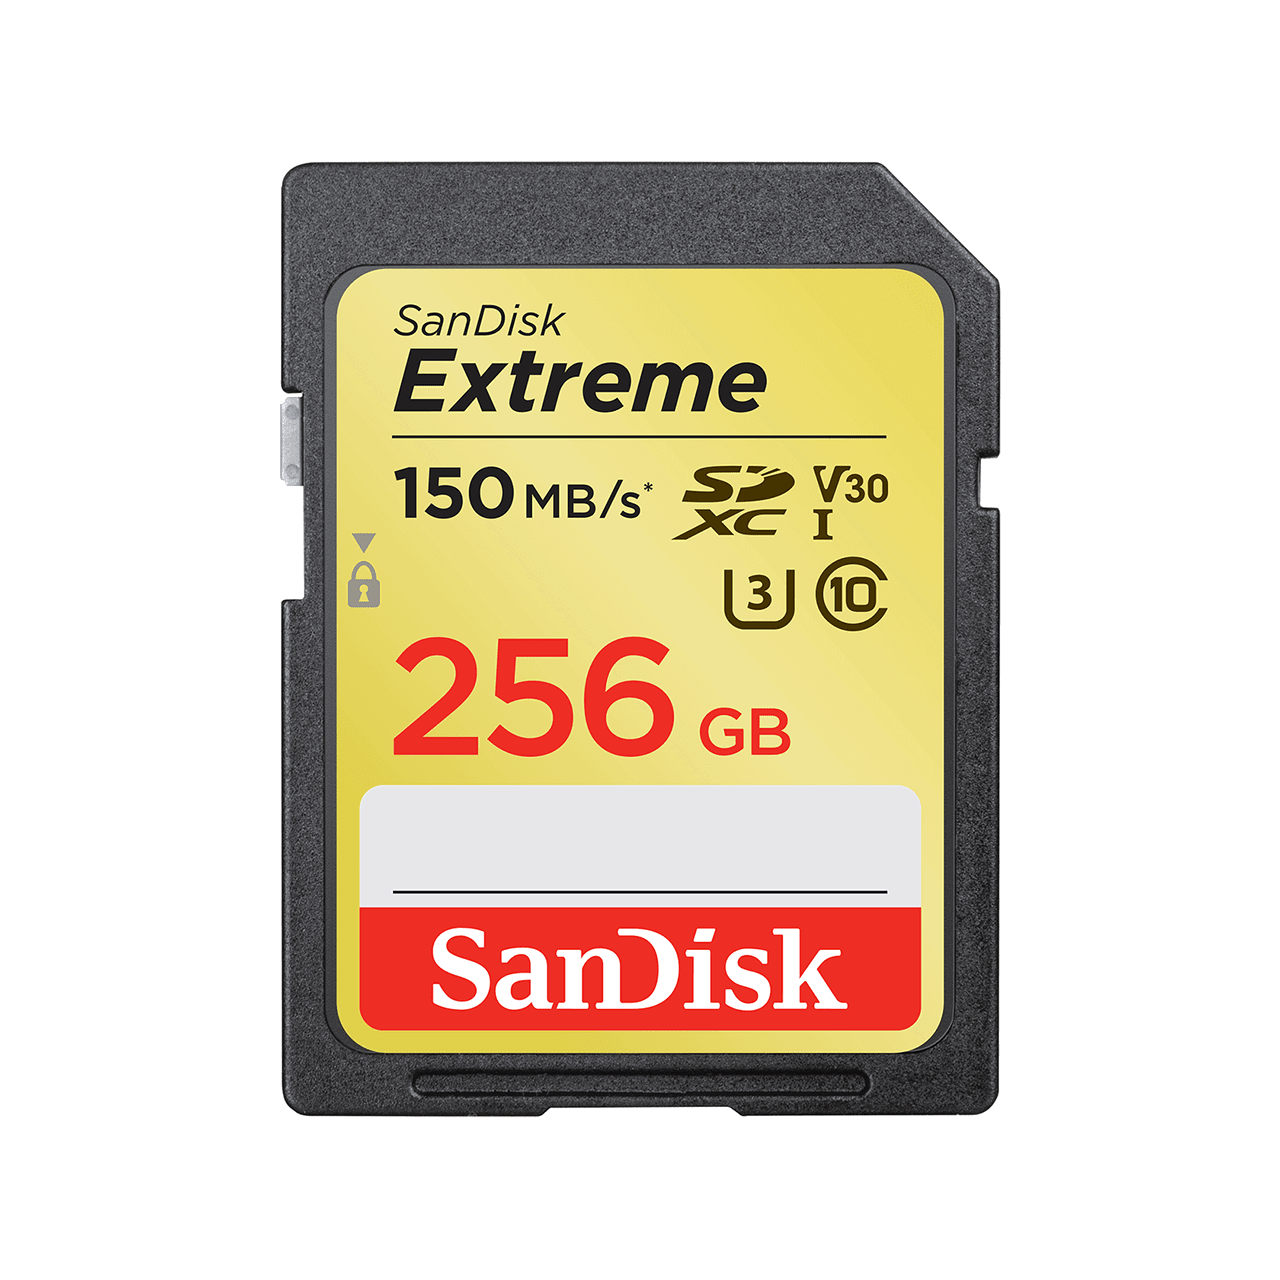 SanDisk Extreme SD UHS-I 記憶卡